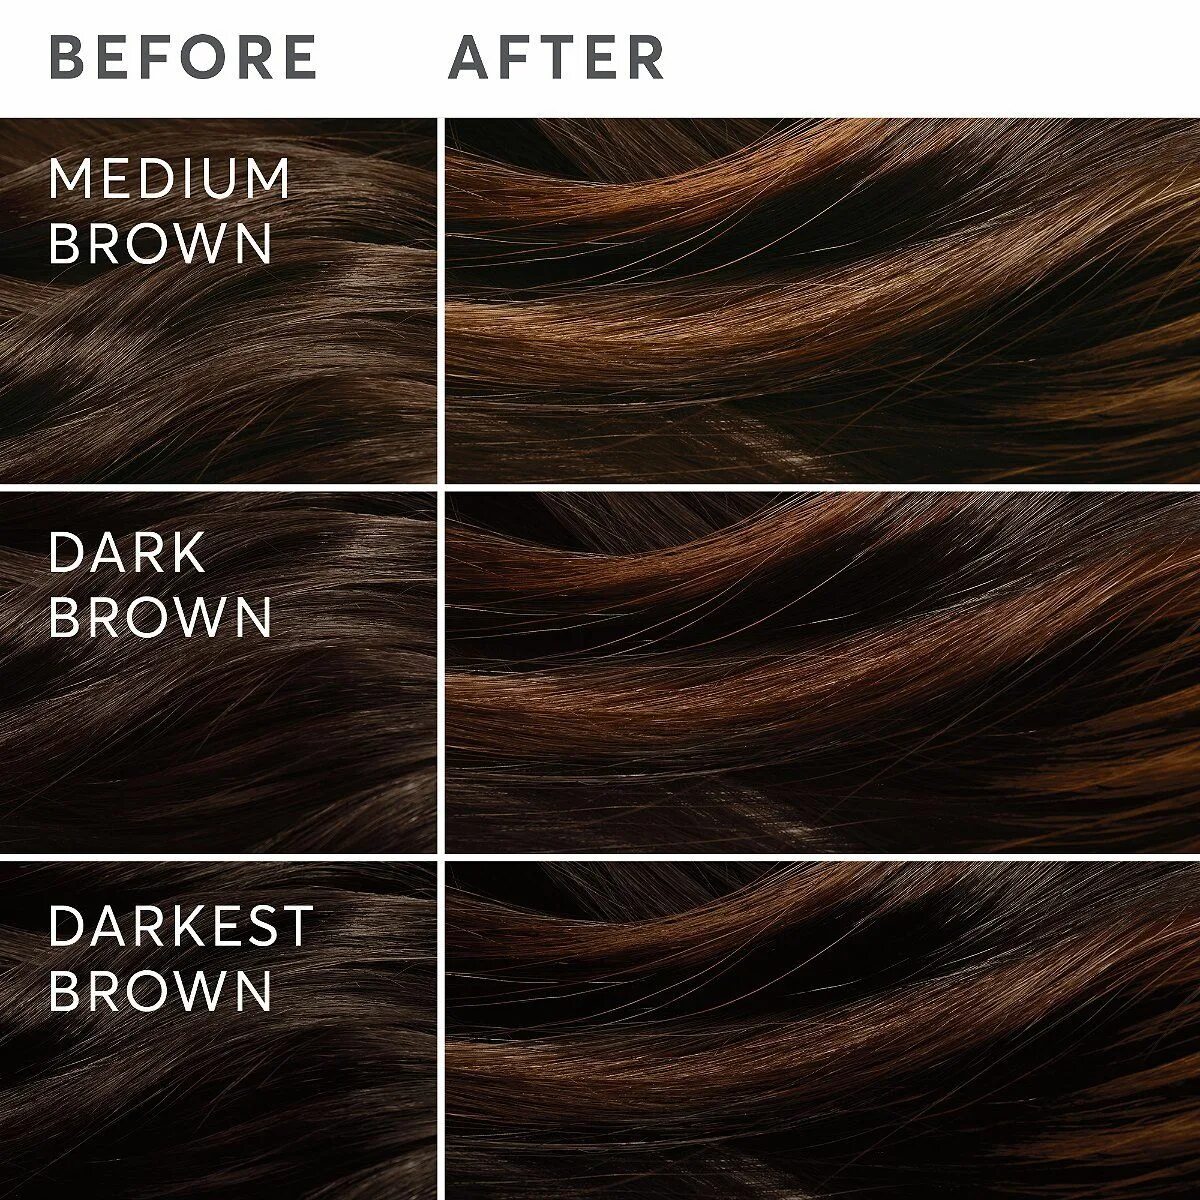 Brown какой цвет. Дарк Браун Хаир. Дарк Браун цвет. Дарк Браун цвет волос. Цвет волос Лайт Браун.